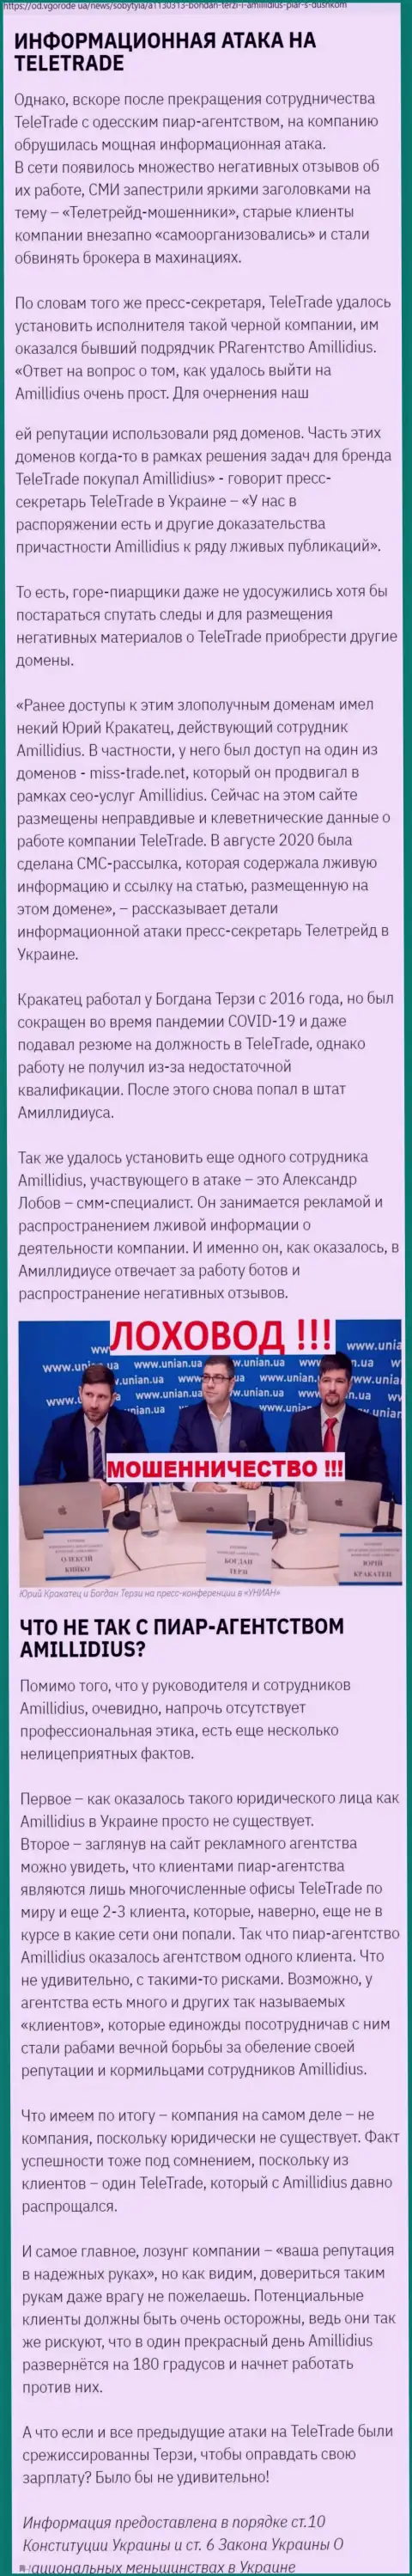 Богдан Терзи организовал информационную атаку против своих же работодателей, а именно мошенников TeleTrade Org